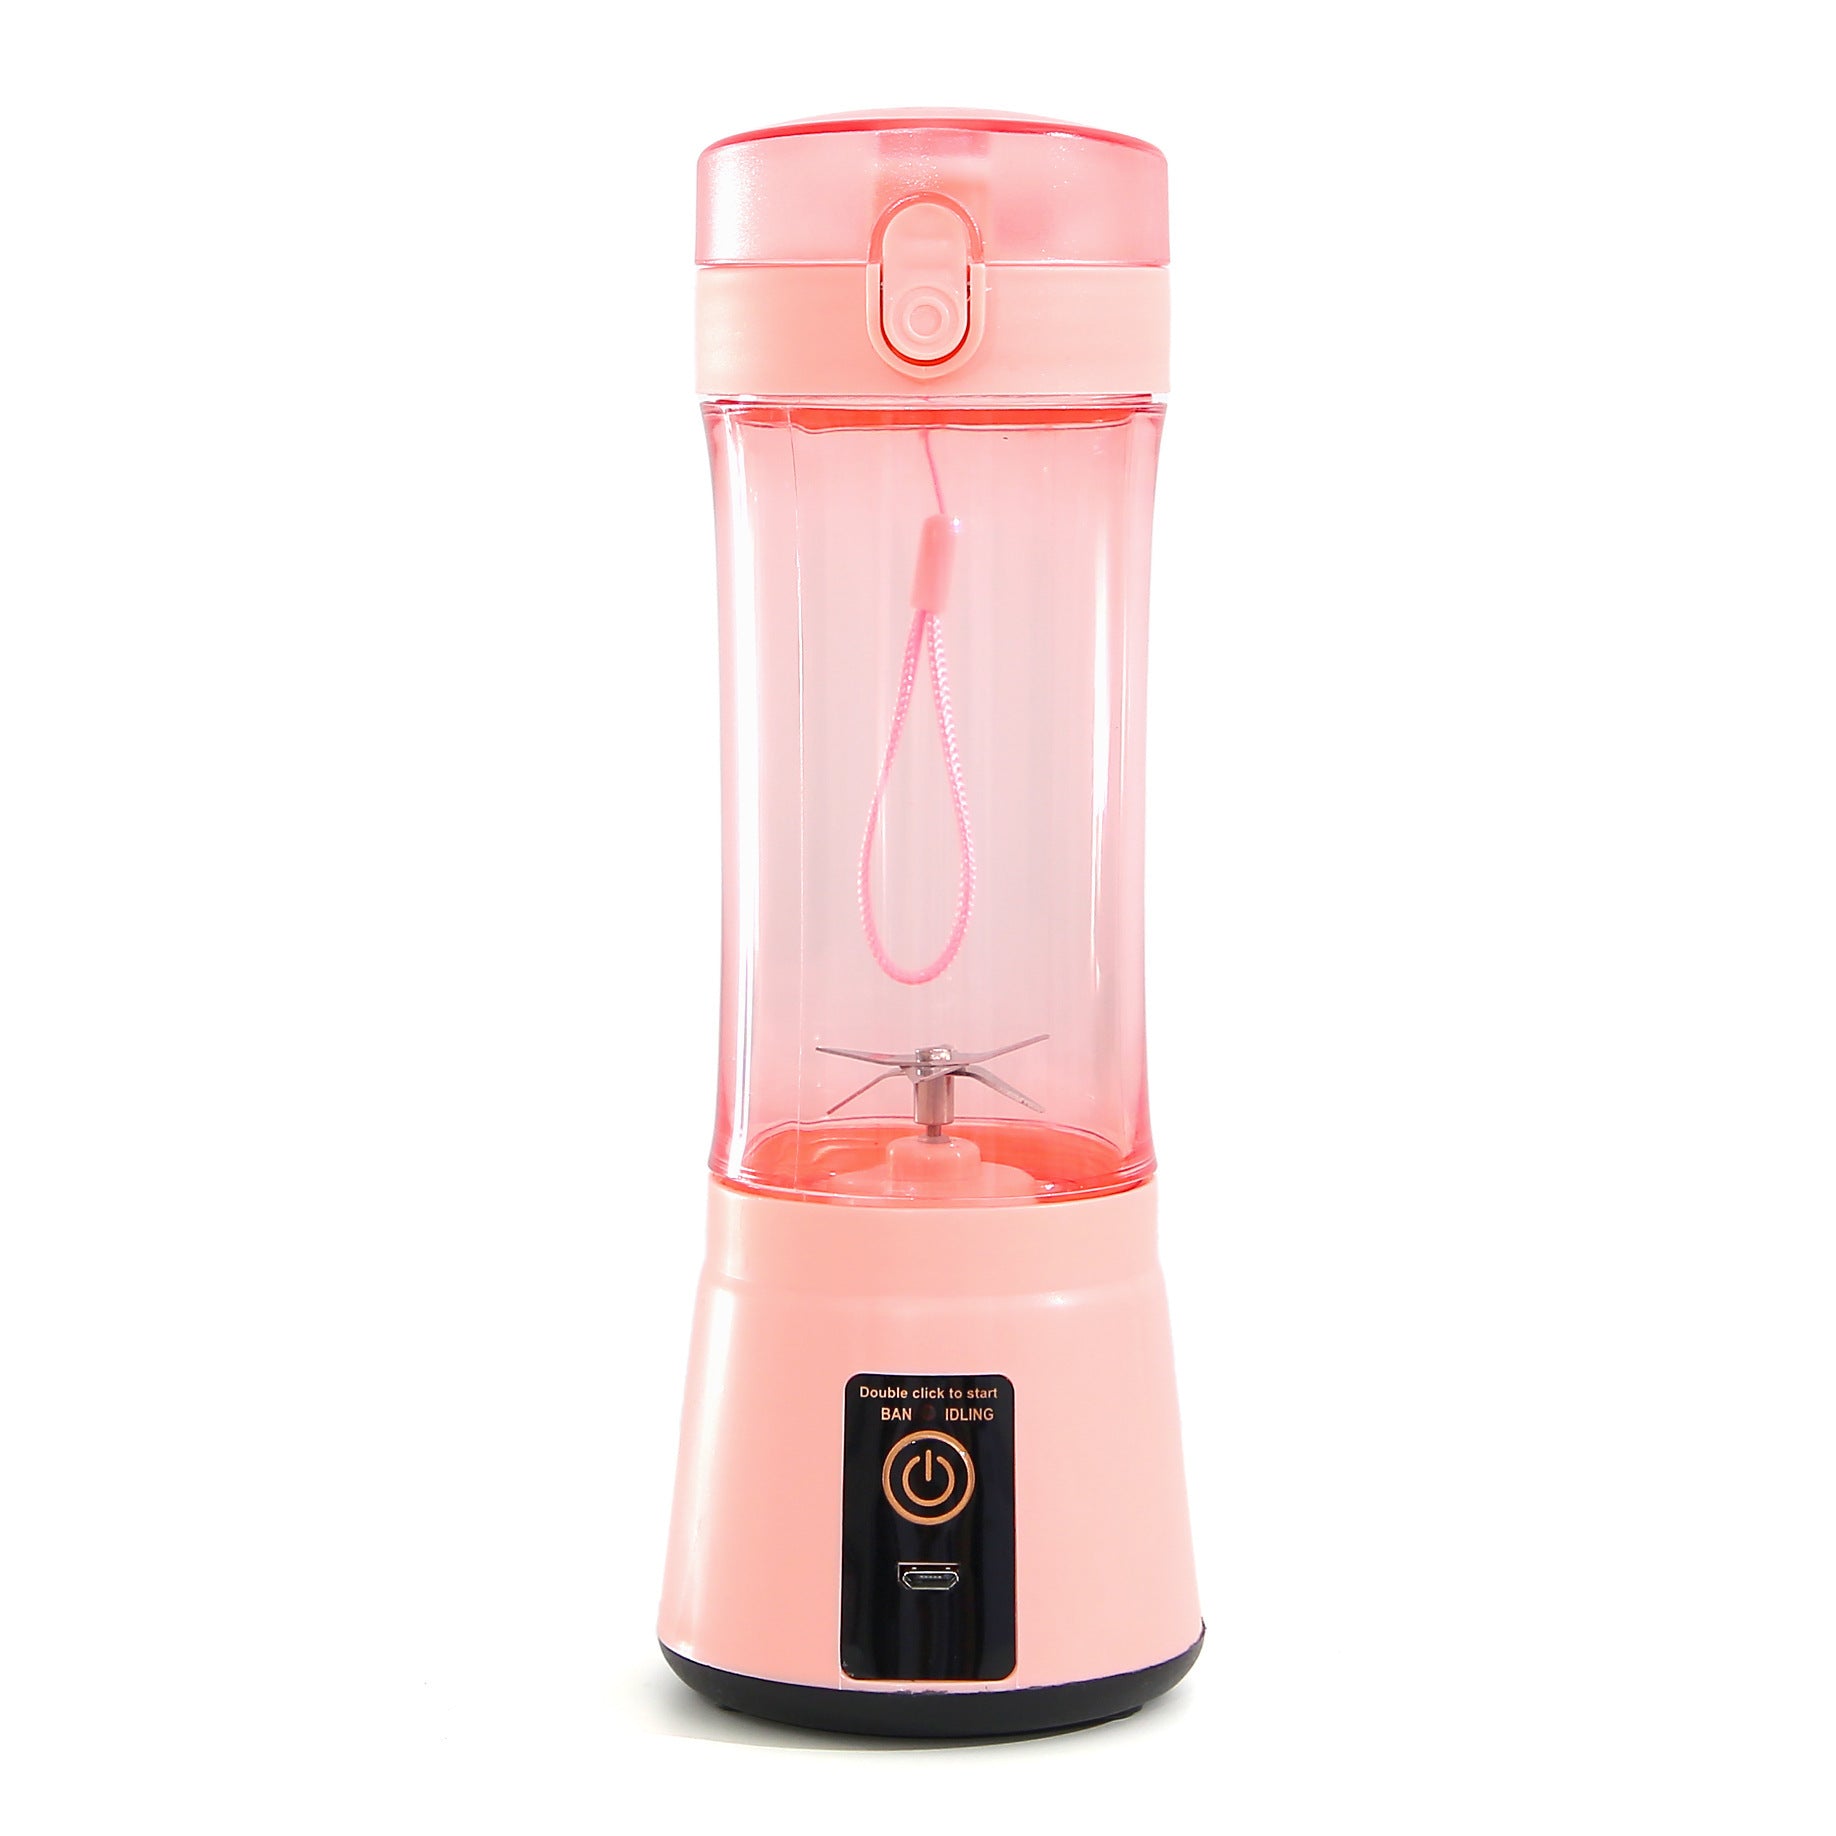 Portable Blender Portable Fruit Electric Juicing Cup Kitchen Gadgets Emporium Discounts Pink 